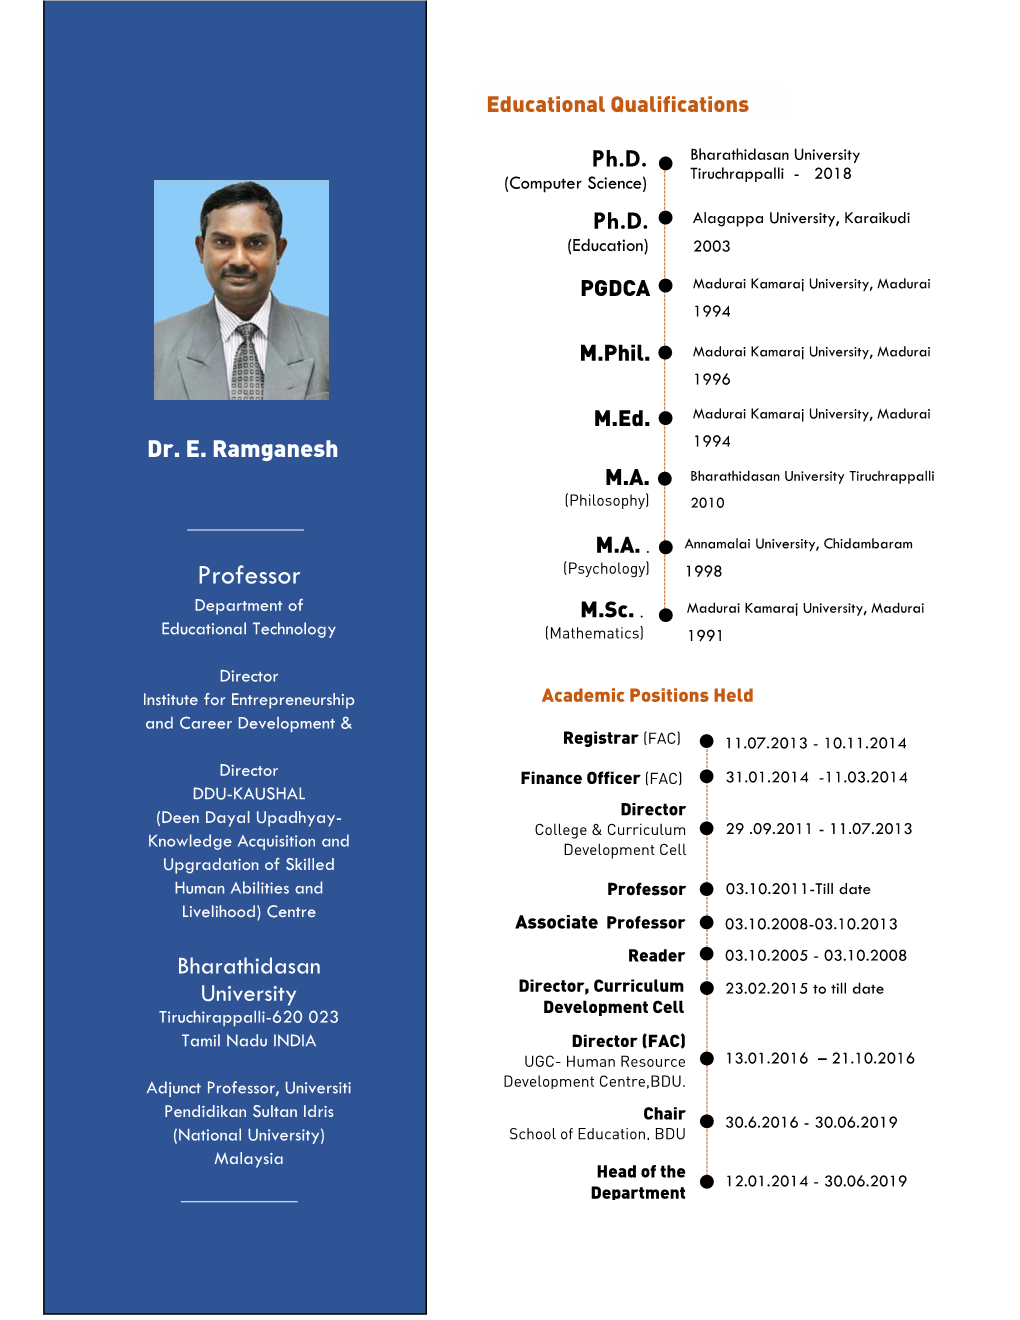 Dr. E. Ramganesh Professor